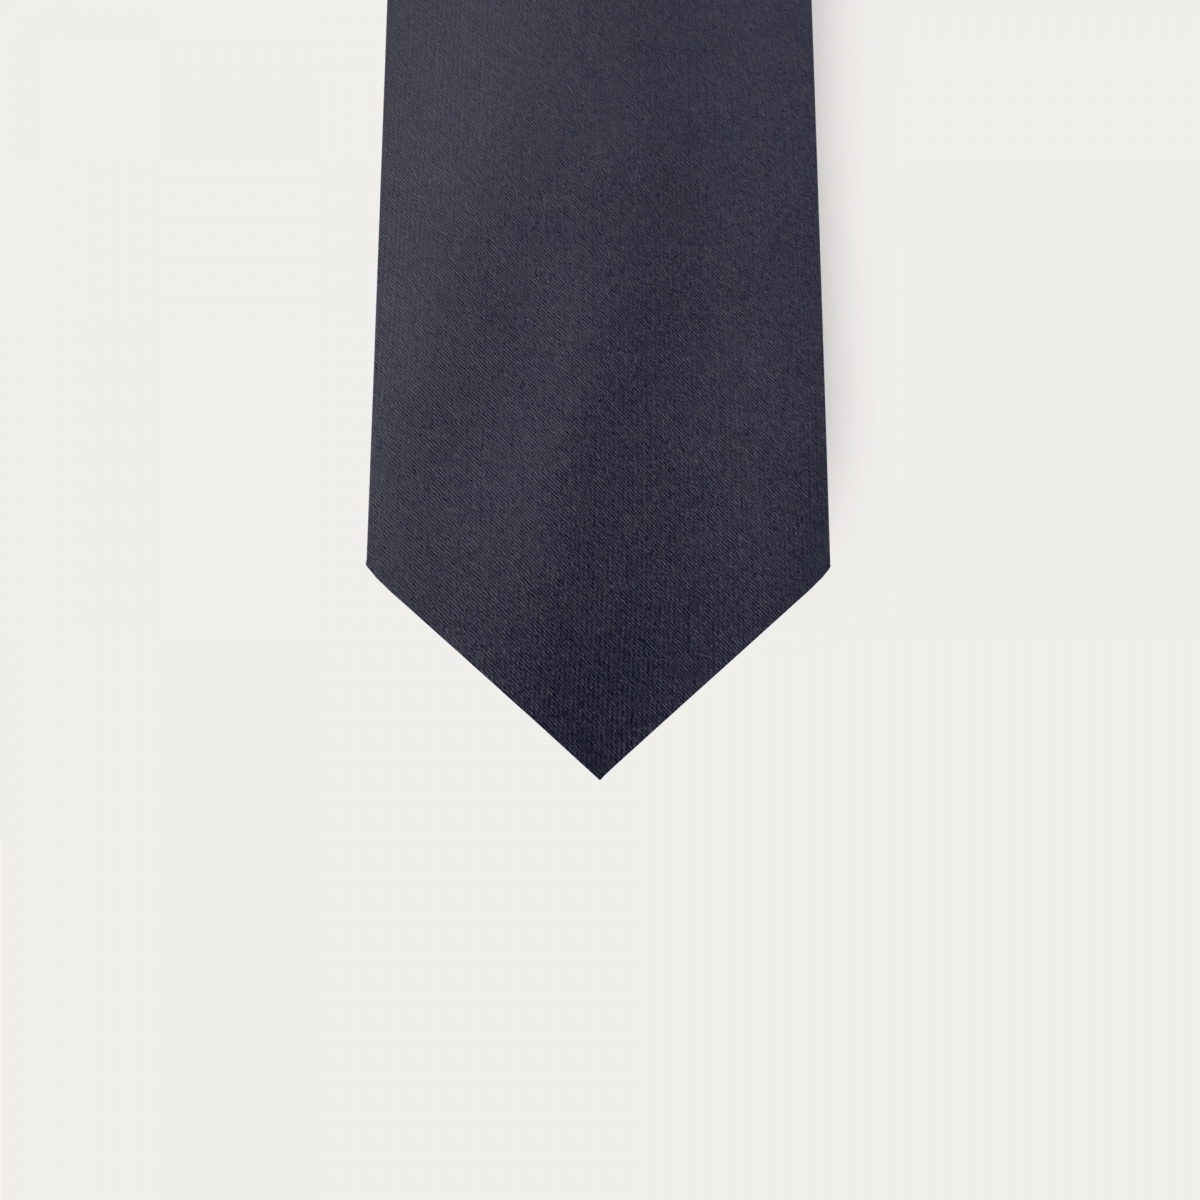 Cravatta in raso di seta blu navy